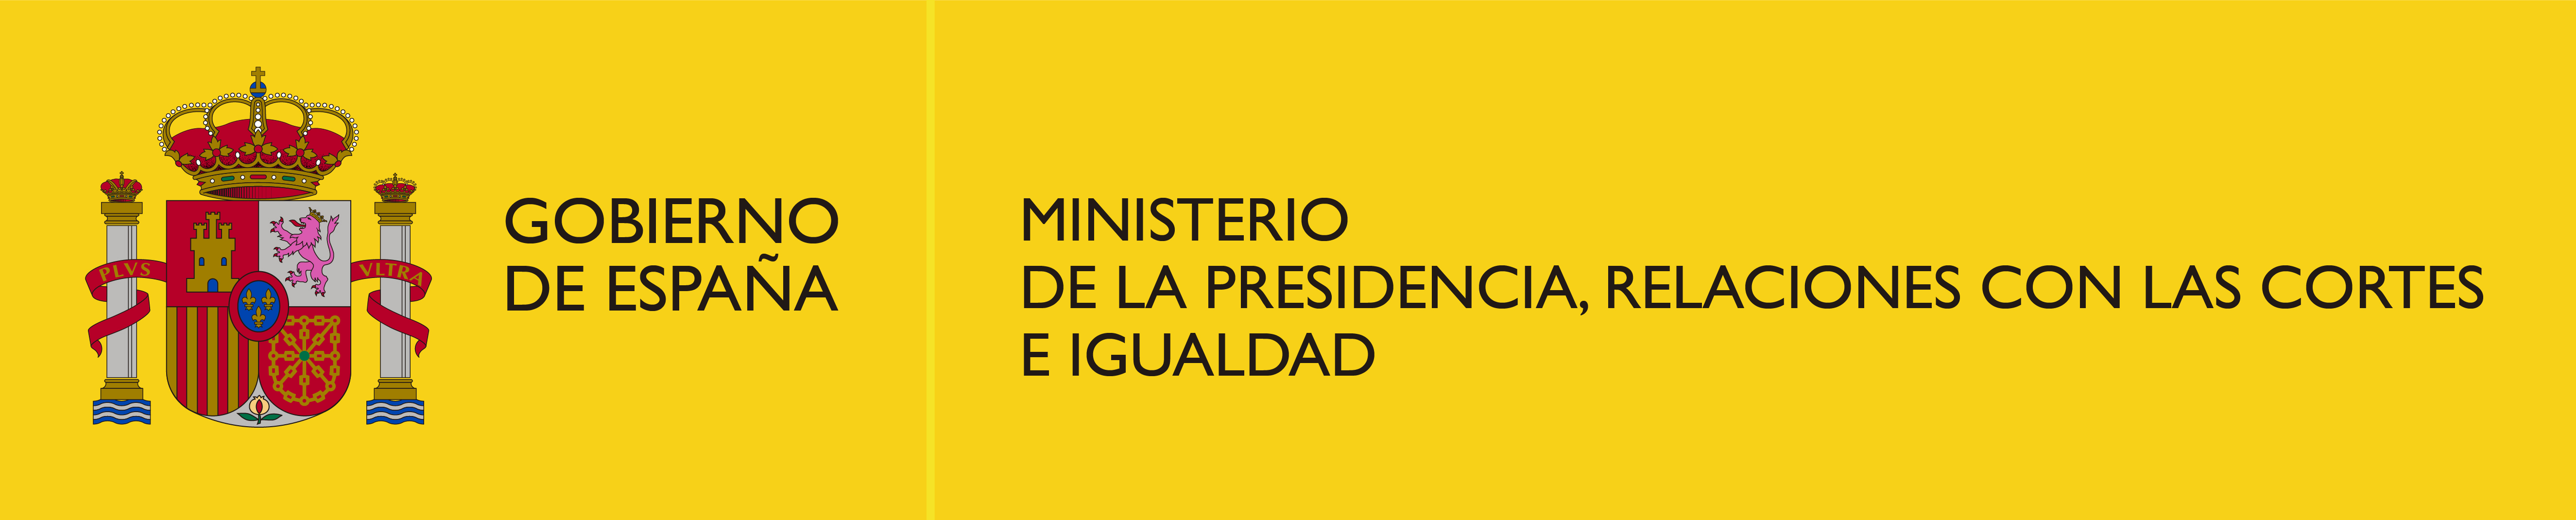 Logo Ministerio de la Presidencia, Relaciones con las Cortes e Igualdad color